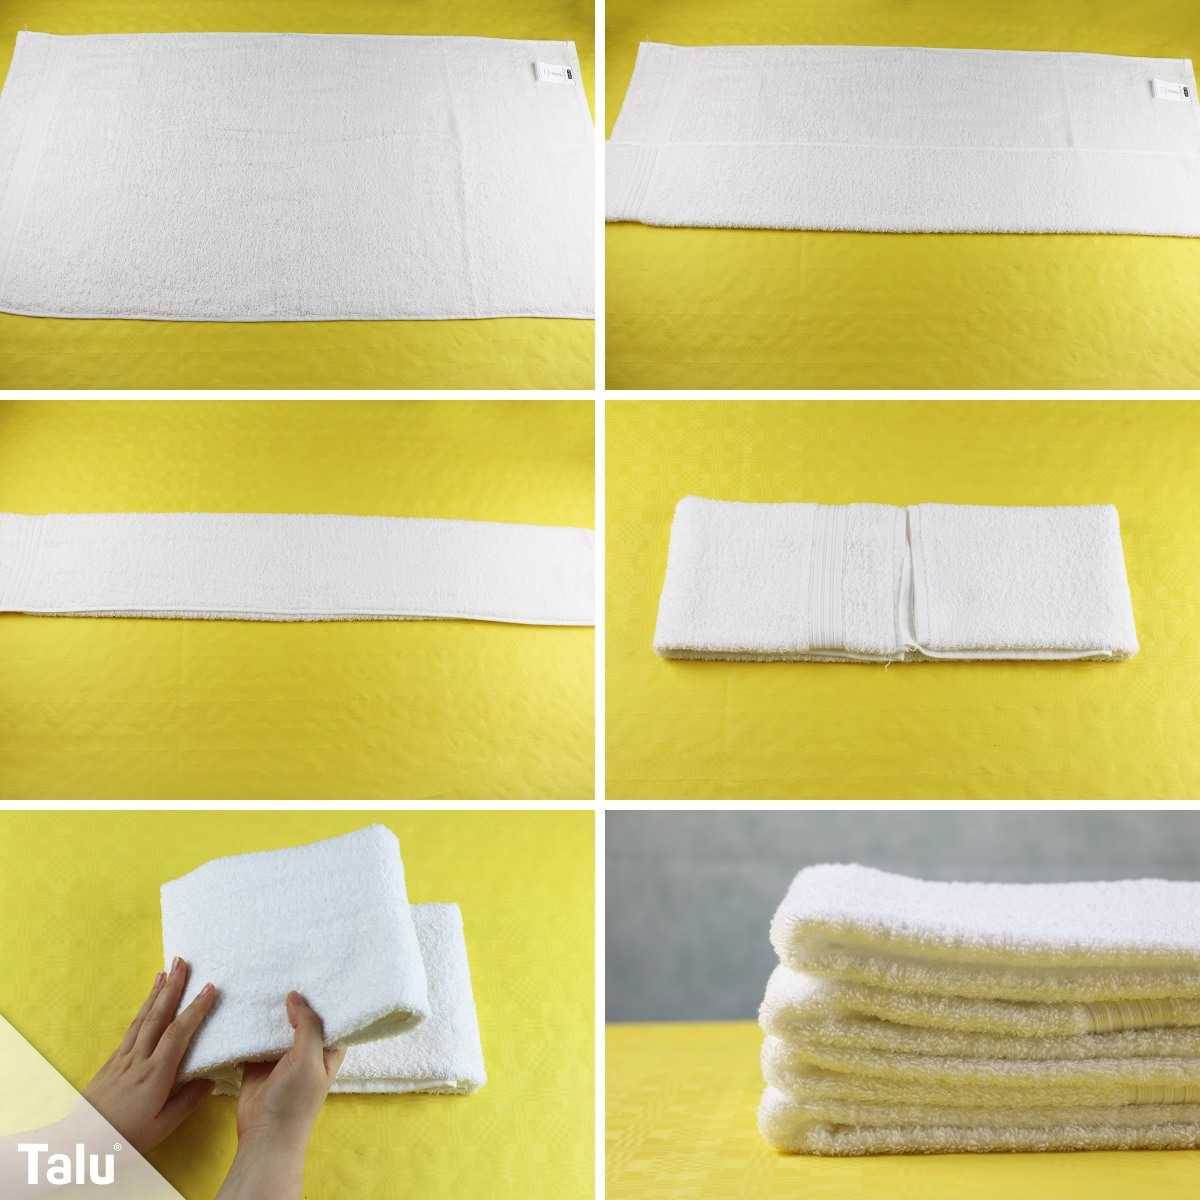 Как красиво сложить полотенце: лебедь, мишка и роза | текстильпрофи - полезные материалы о домашнем текстиле